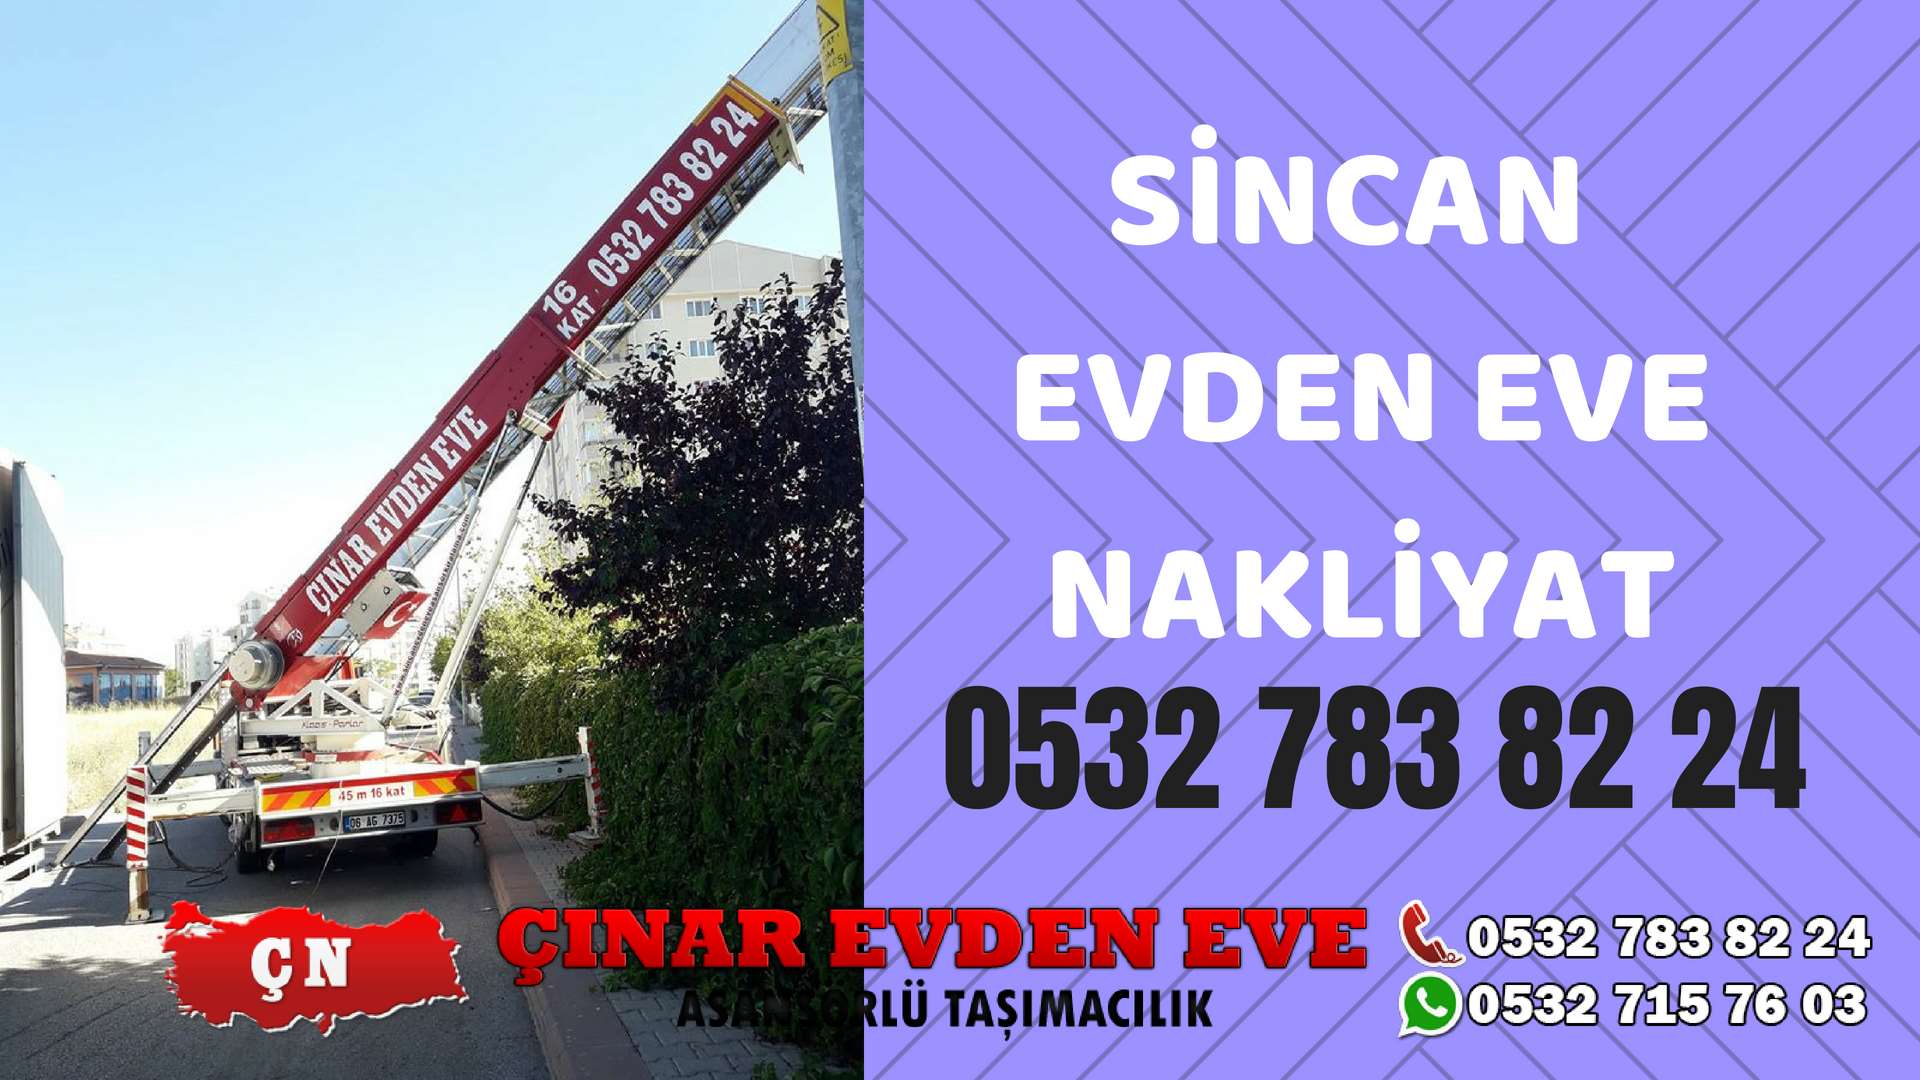 Ankara Etimesgut Sincan Evden Eve Nakliyat, Asansörlü Taşıma Çınar Nakliyat Sincan 0532 715 76 03